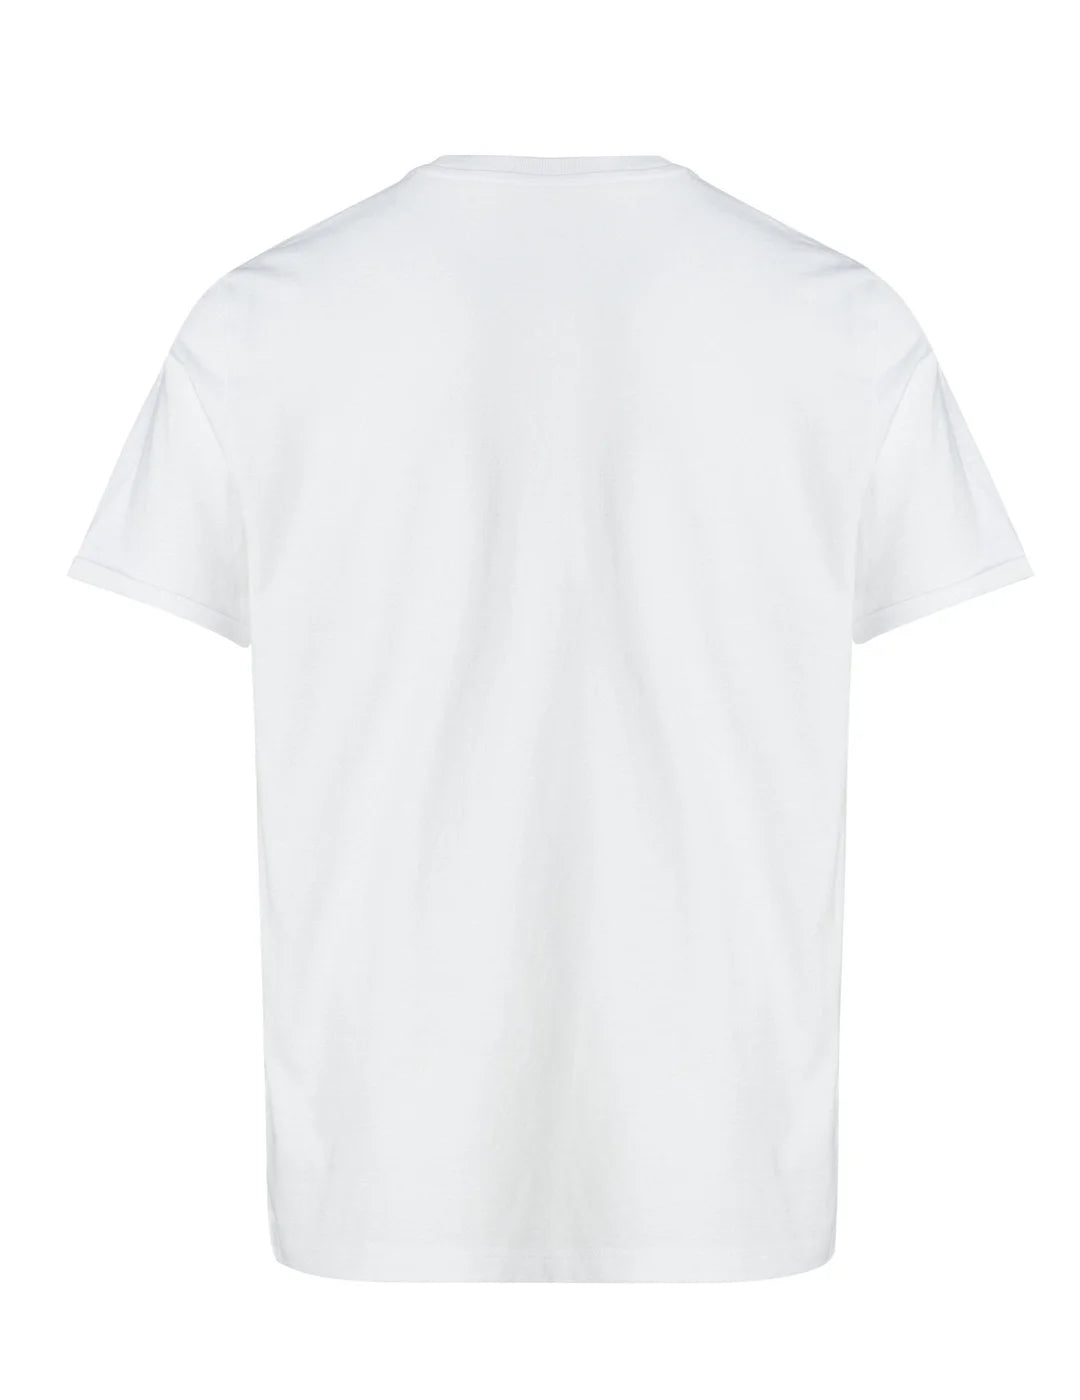 Camiseta Logo Univesitario Salsa Jeans Blanco | Bicos de Fío